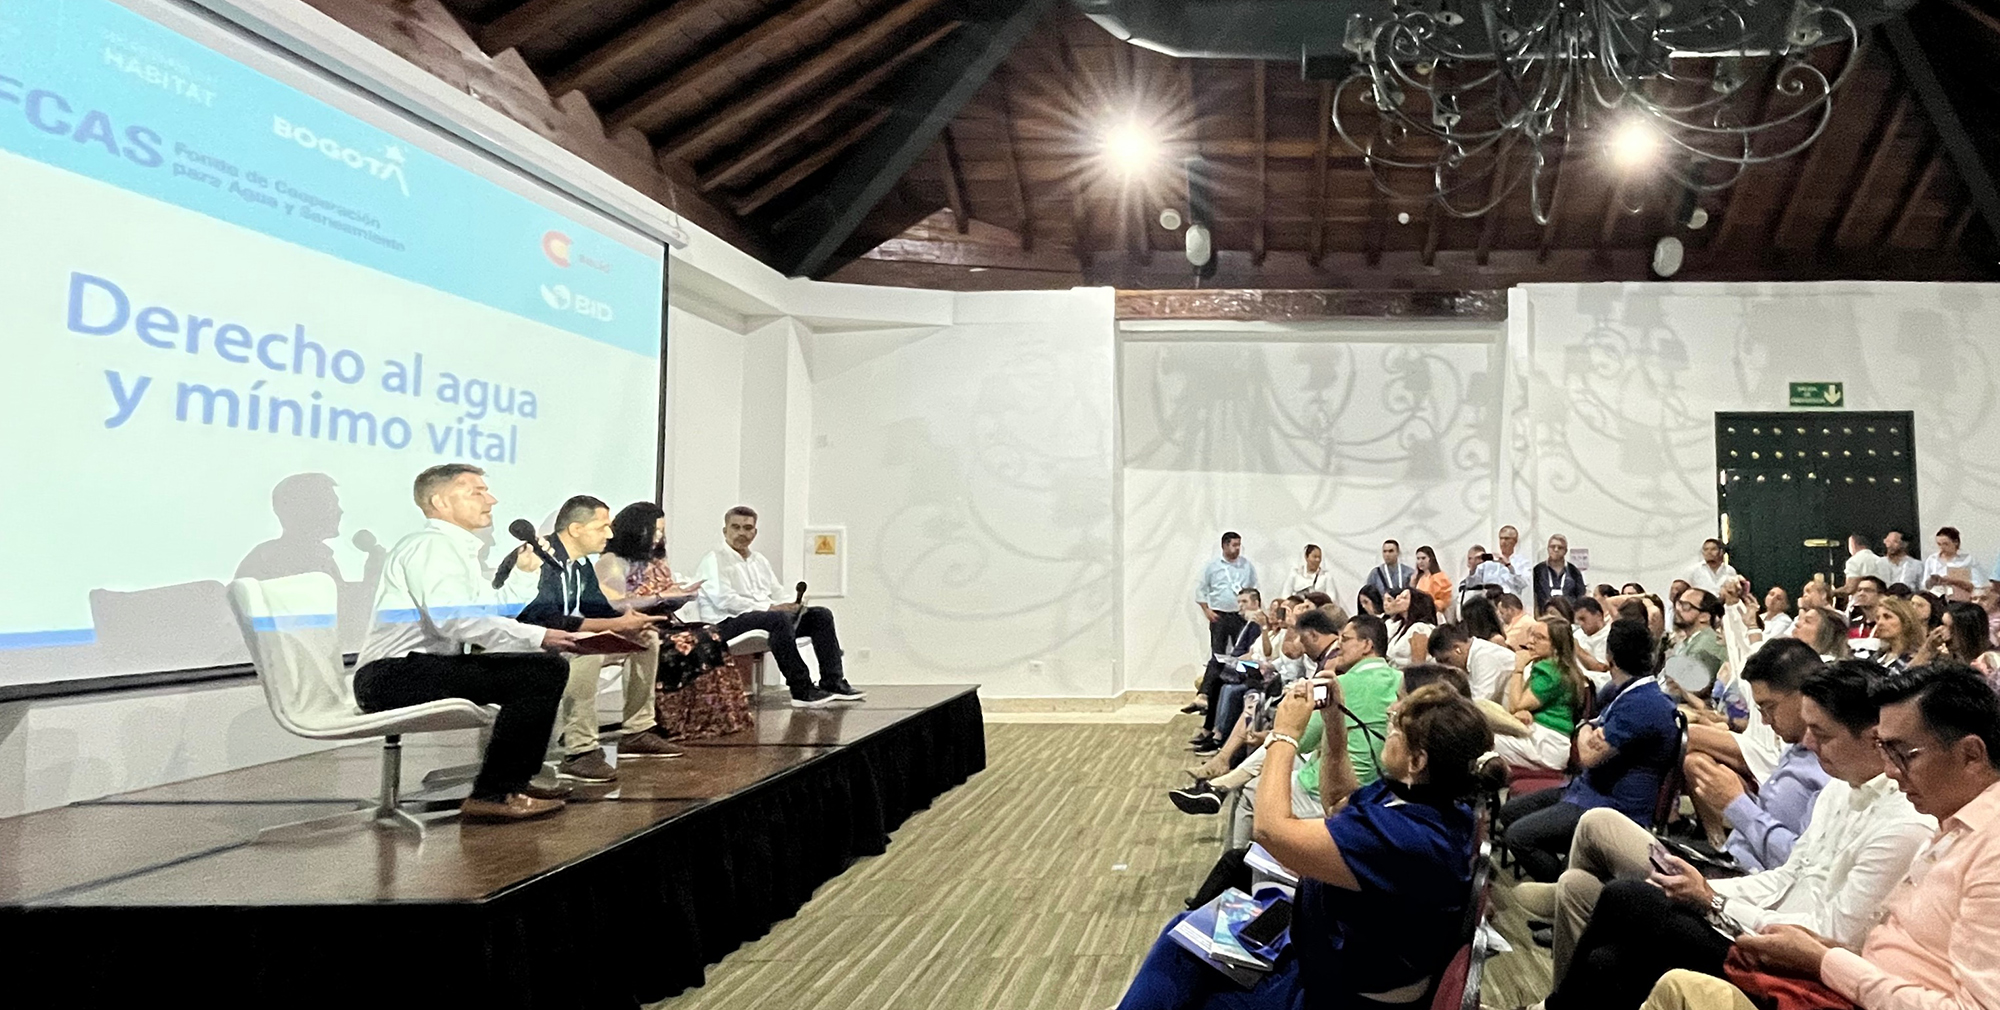 Mesa redonda sobre “Derecho al agua y mínimo vital”, organizada durante el Congreso ANDESCO de prestación de servicios públicos en Colombia.